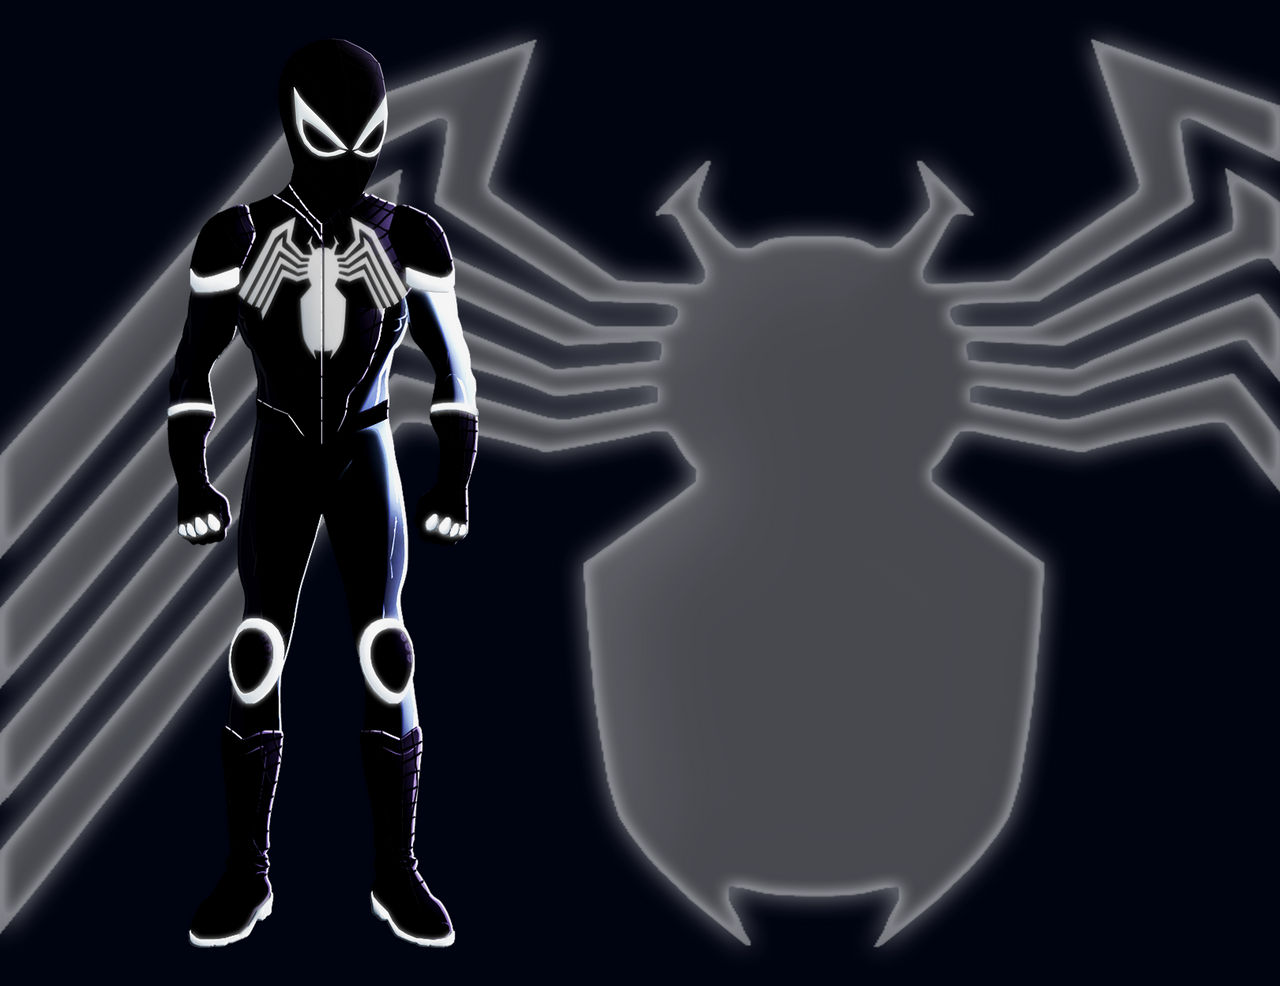 SPIDER-MAN: WEB OF SHADOWS - EPISODE 5 - SYMBIOTE SPIDEY